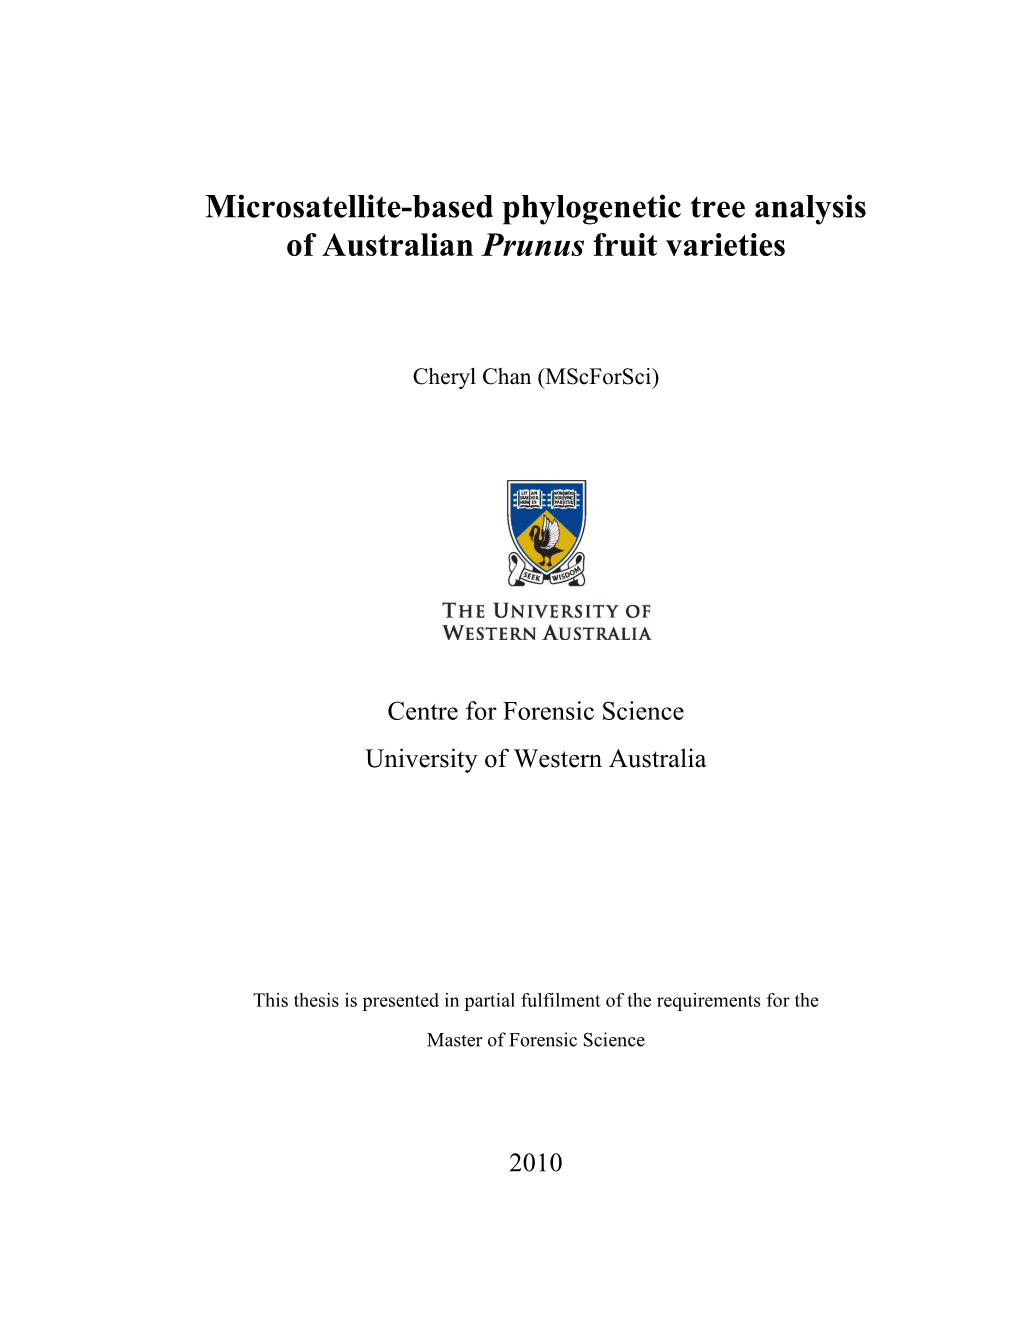 Microsatellite-Based Phylogenetic Tree Analysis of Australian Prunus Fruit Varieties